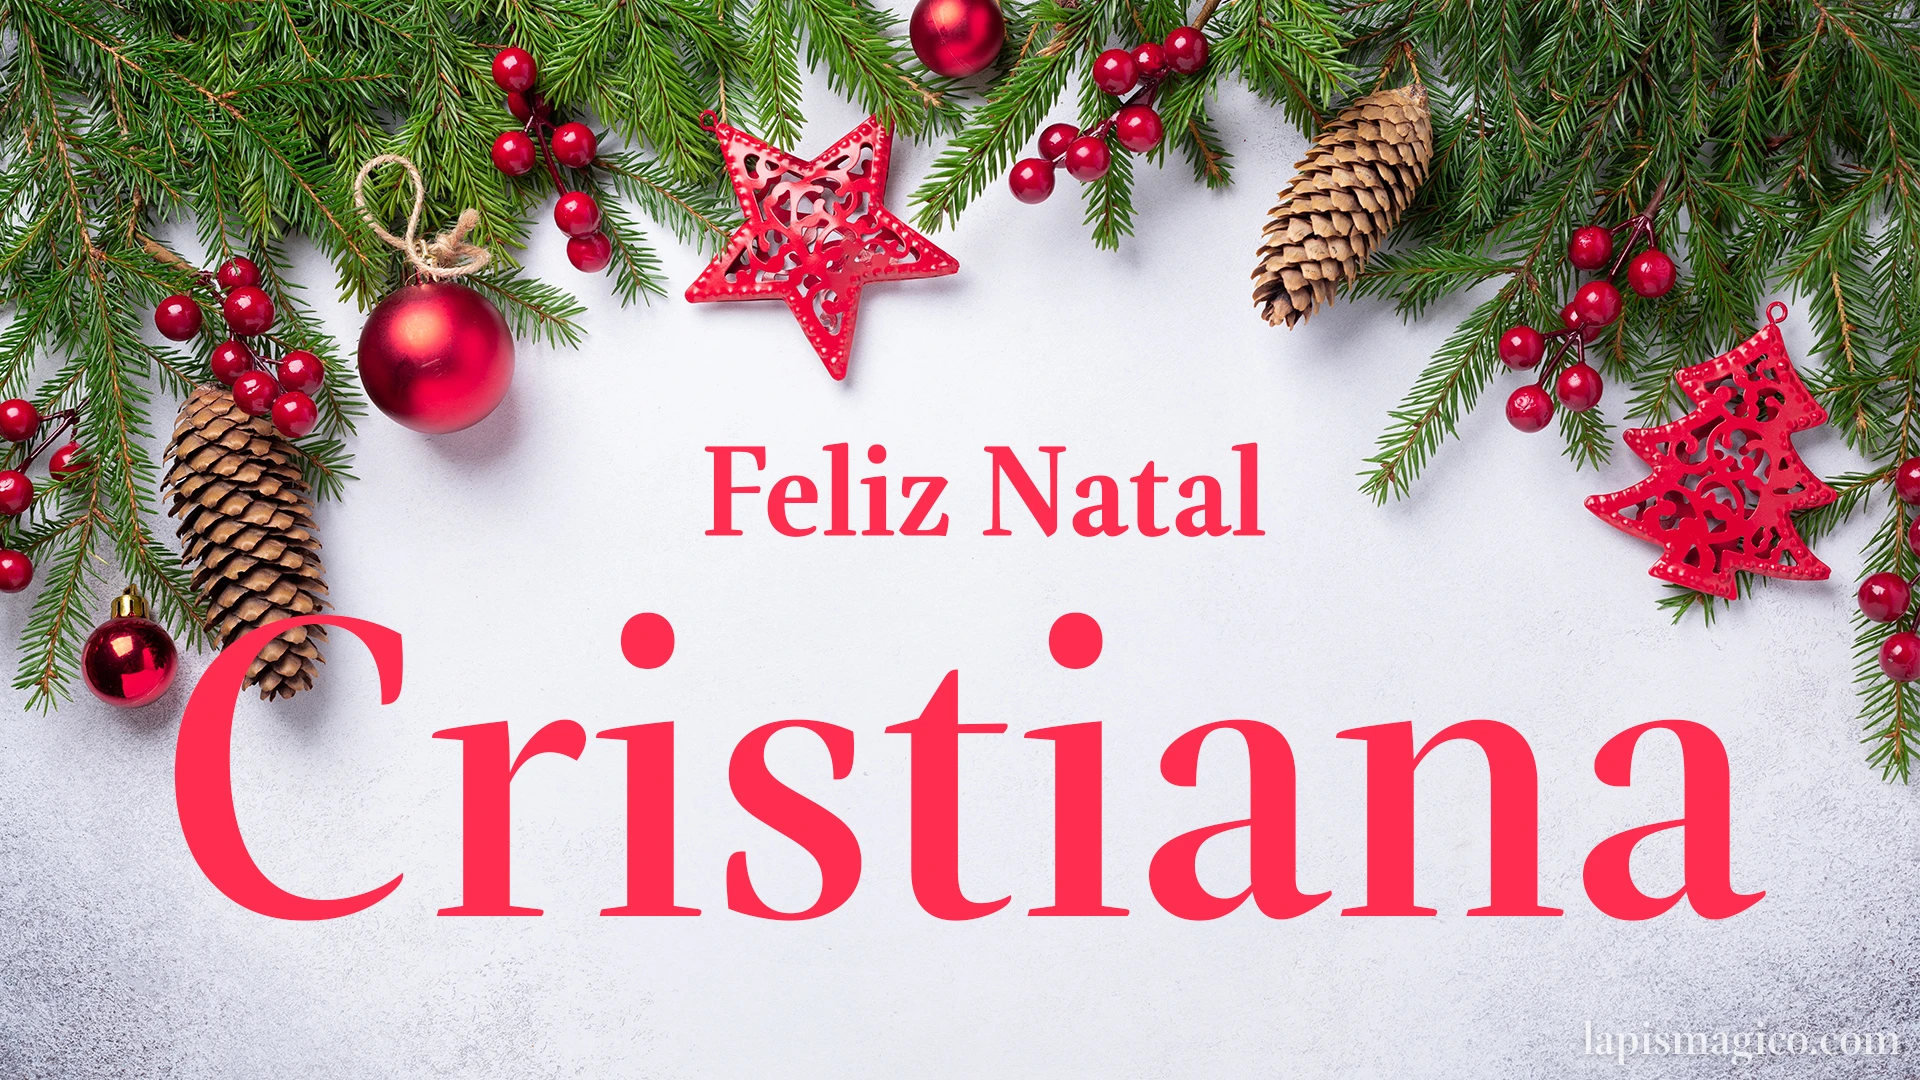 Oh Cristiana, cinco postais de Feliz Natal Postal com o teu nome